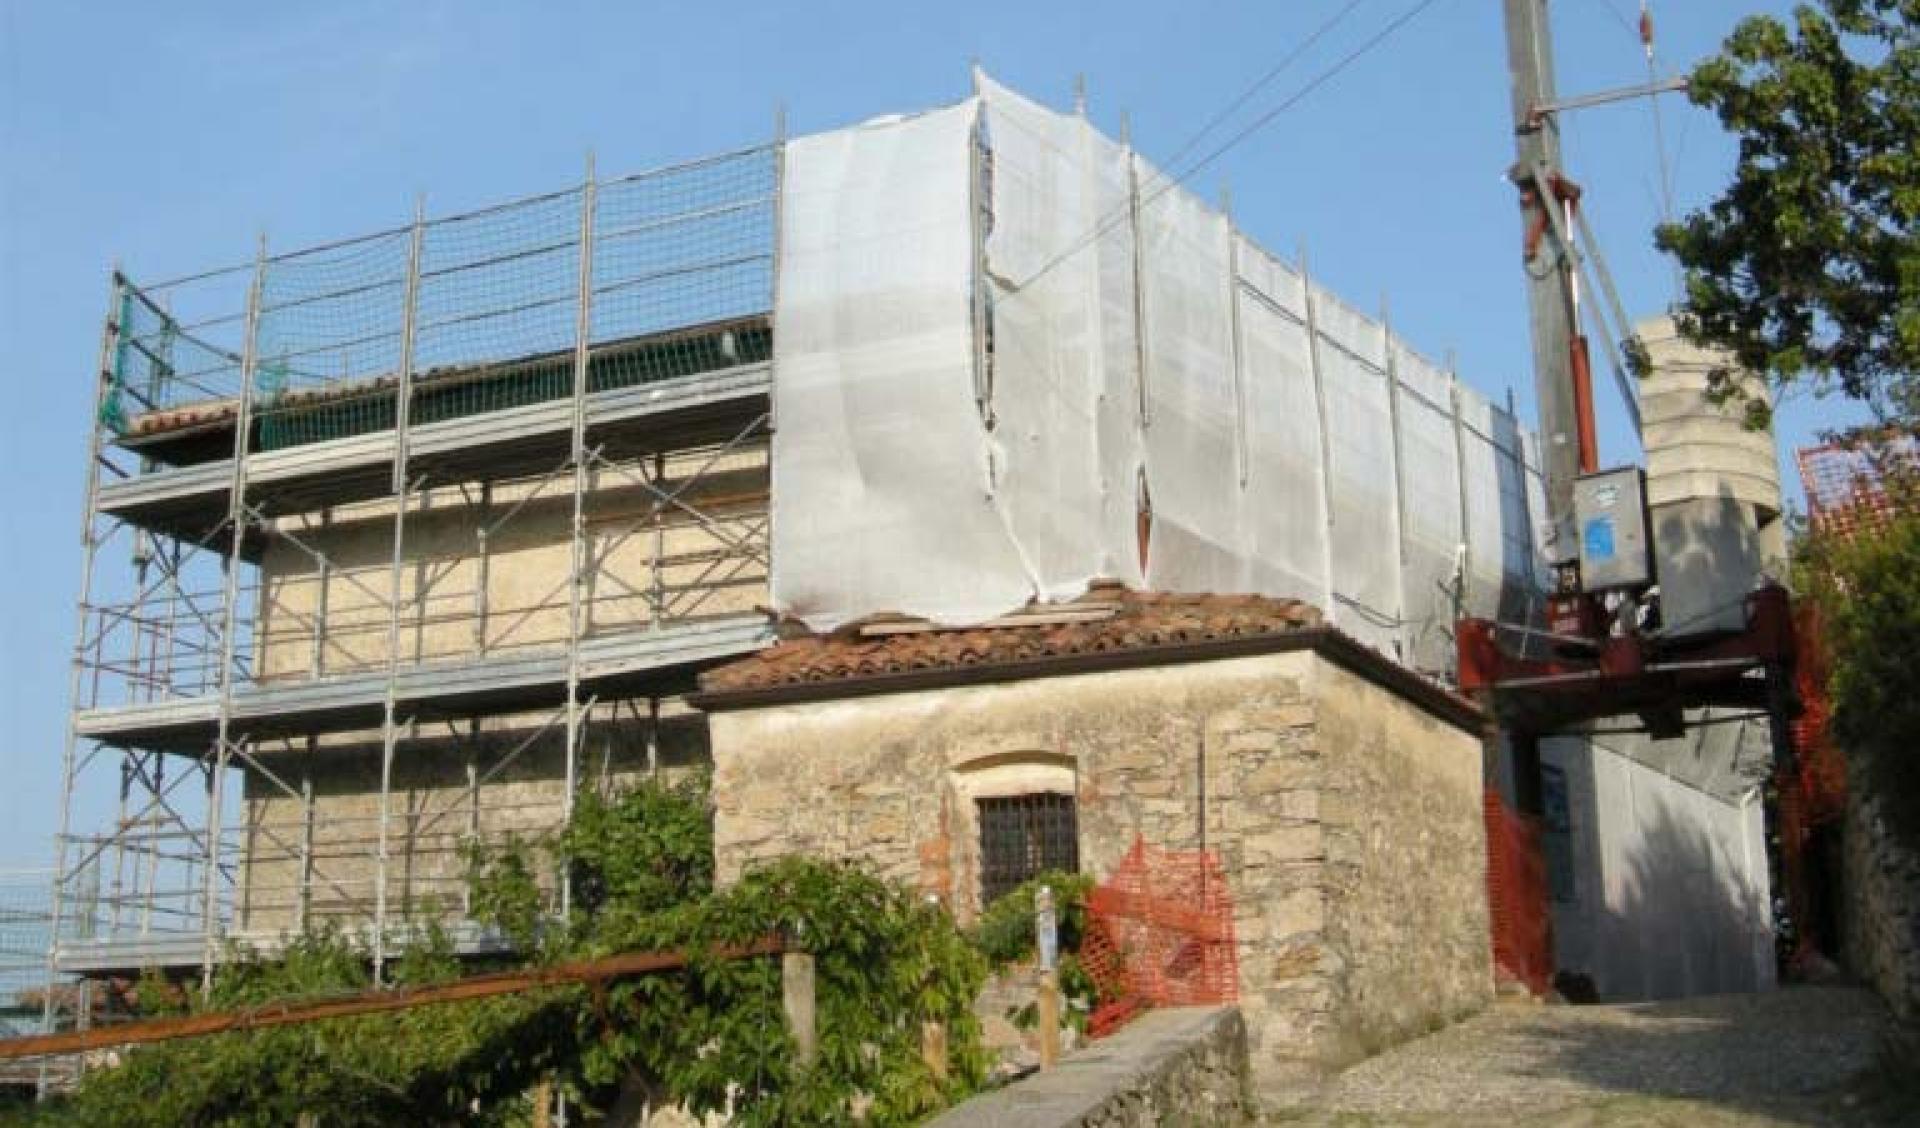 Restoration of the Sanctuary of the Madonna del Corno of Provaglio d'Iseo